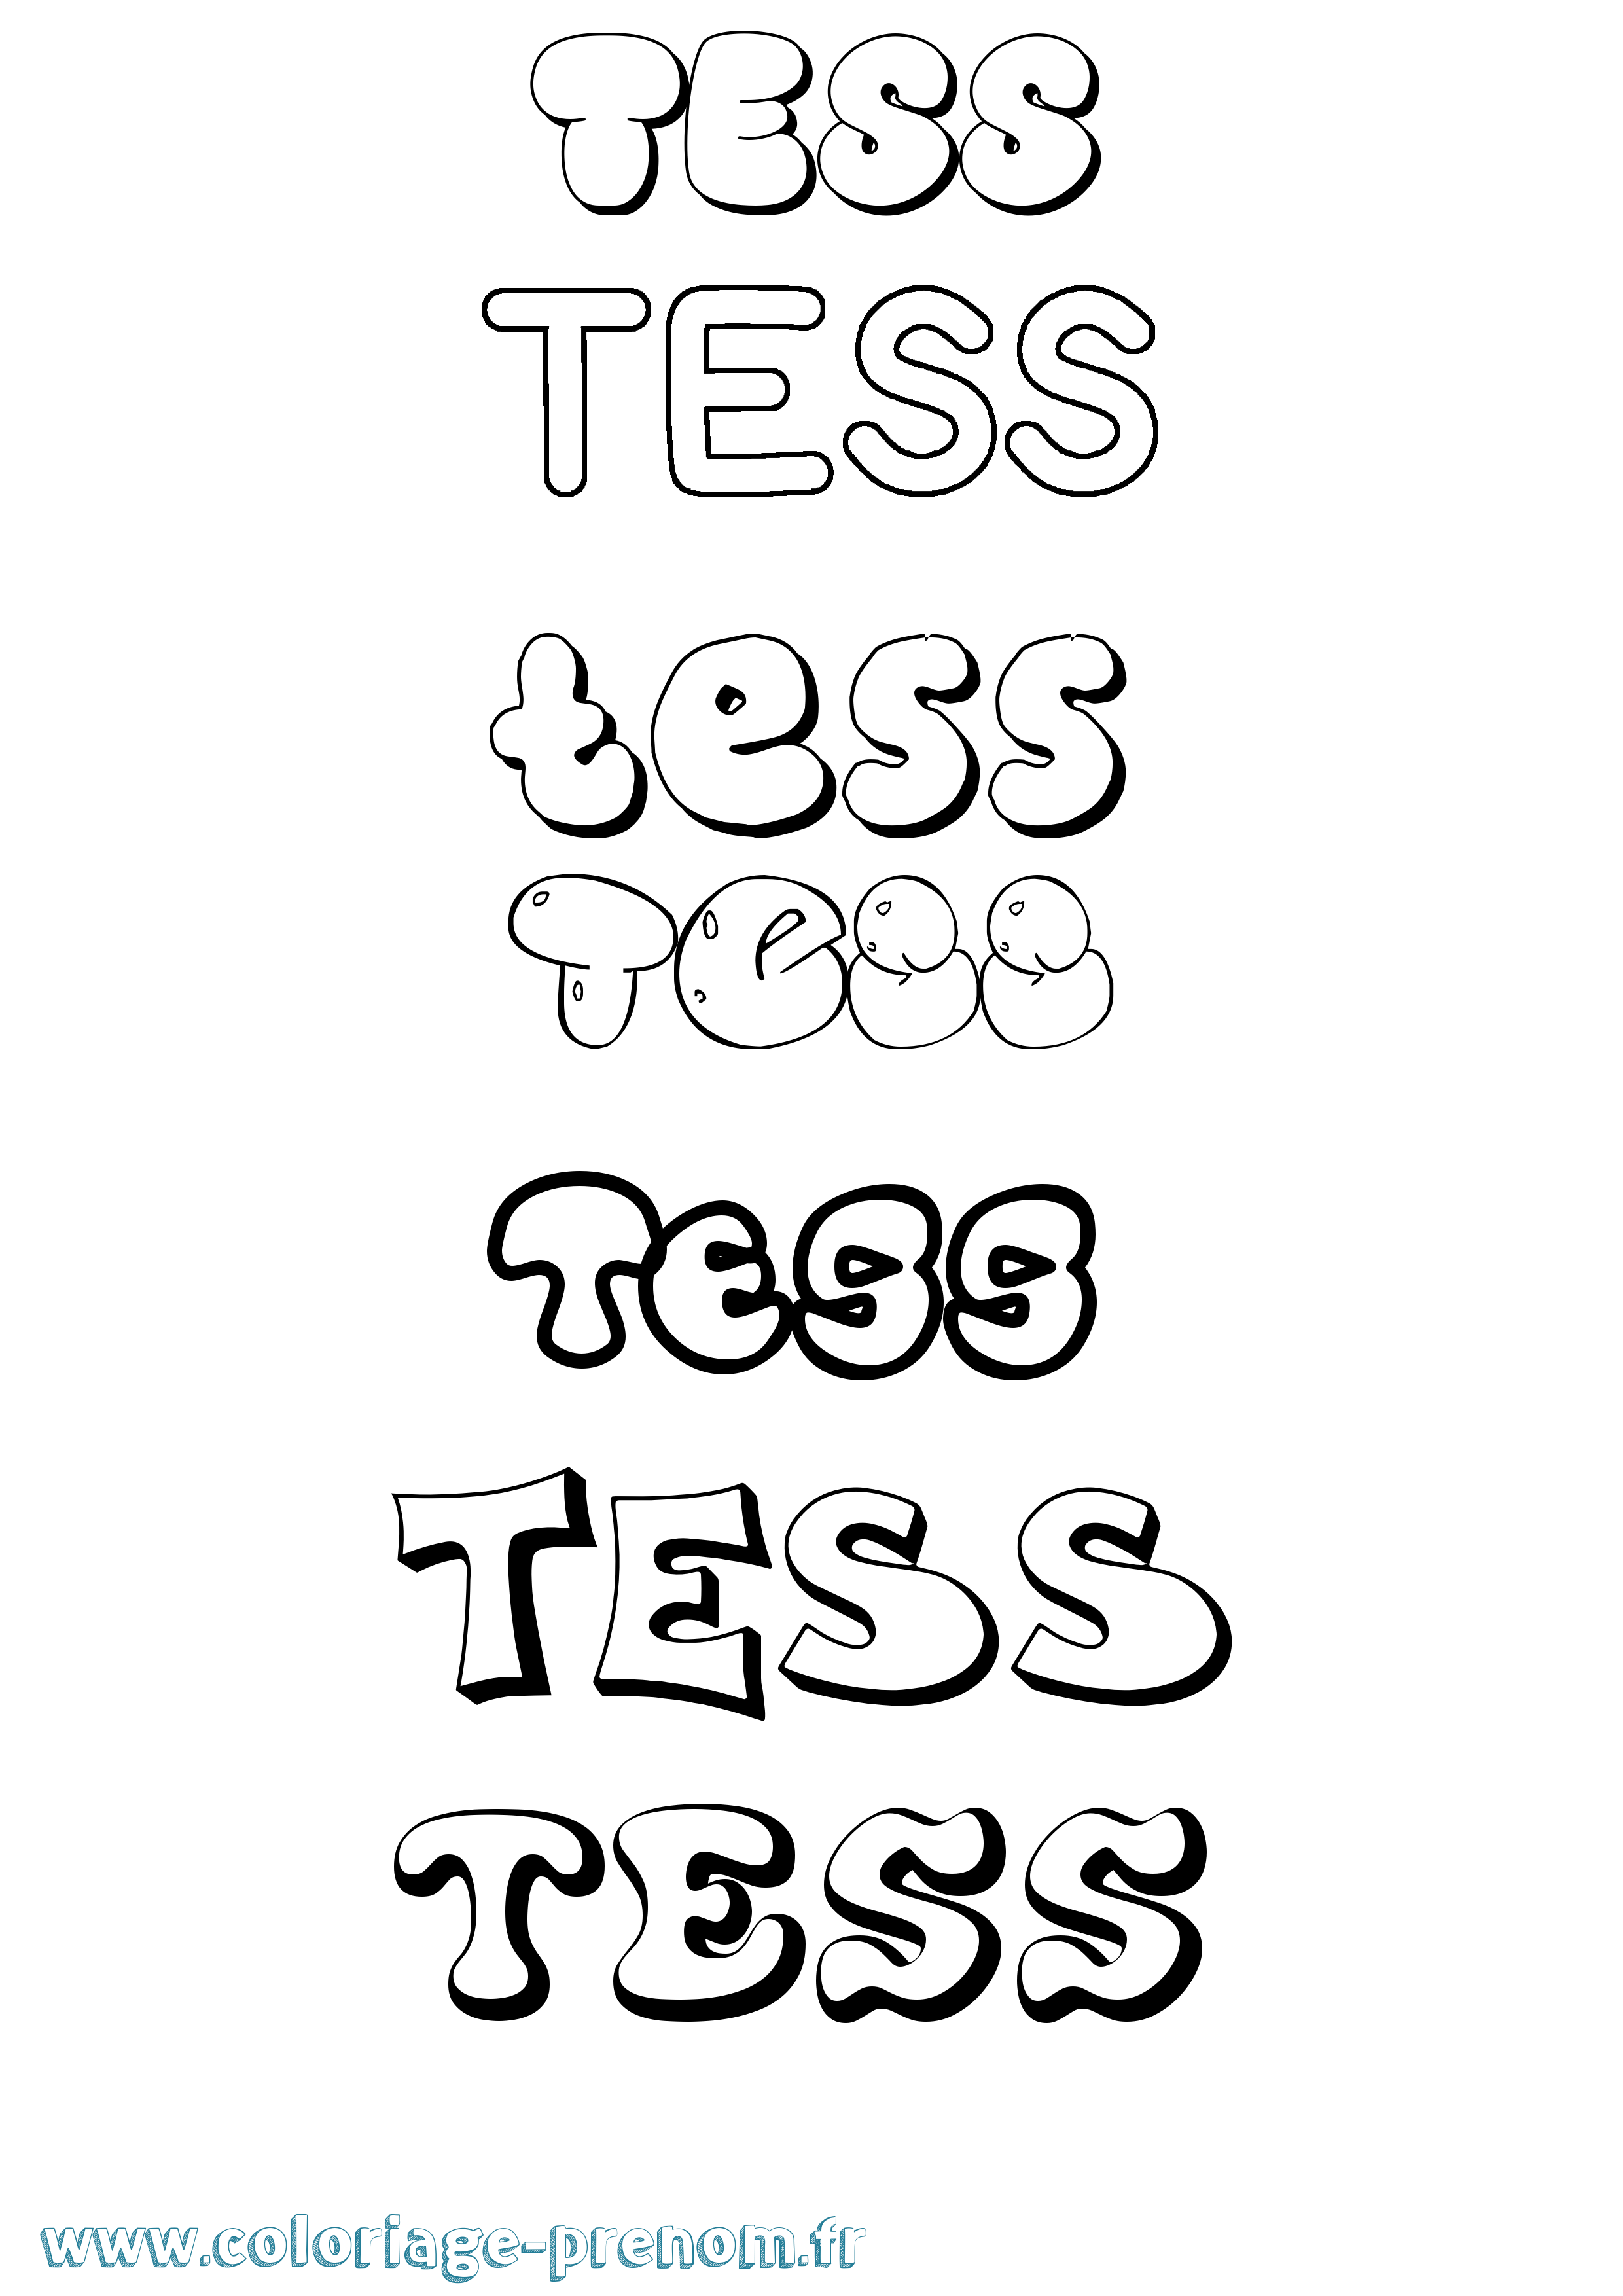 Coloriage prénom Tess